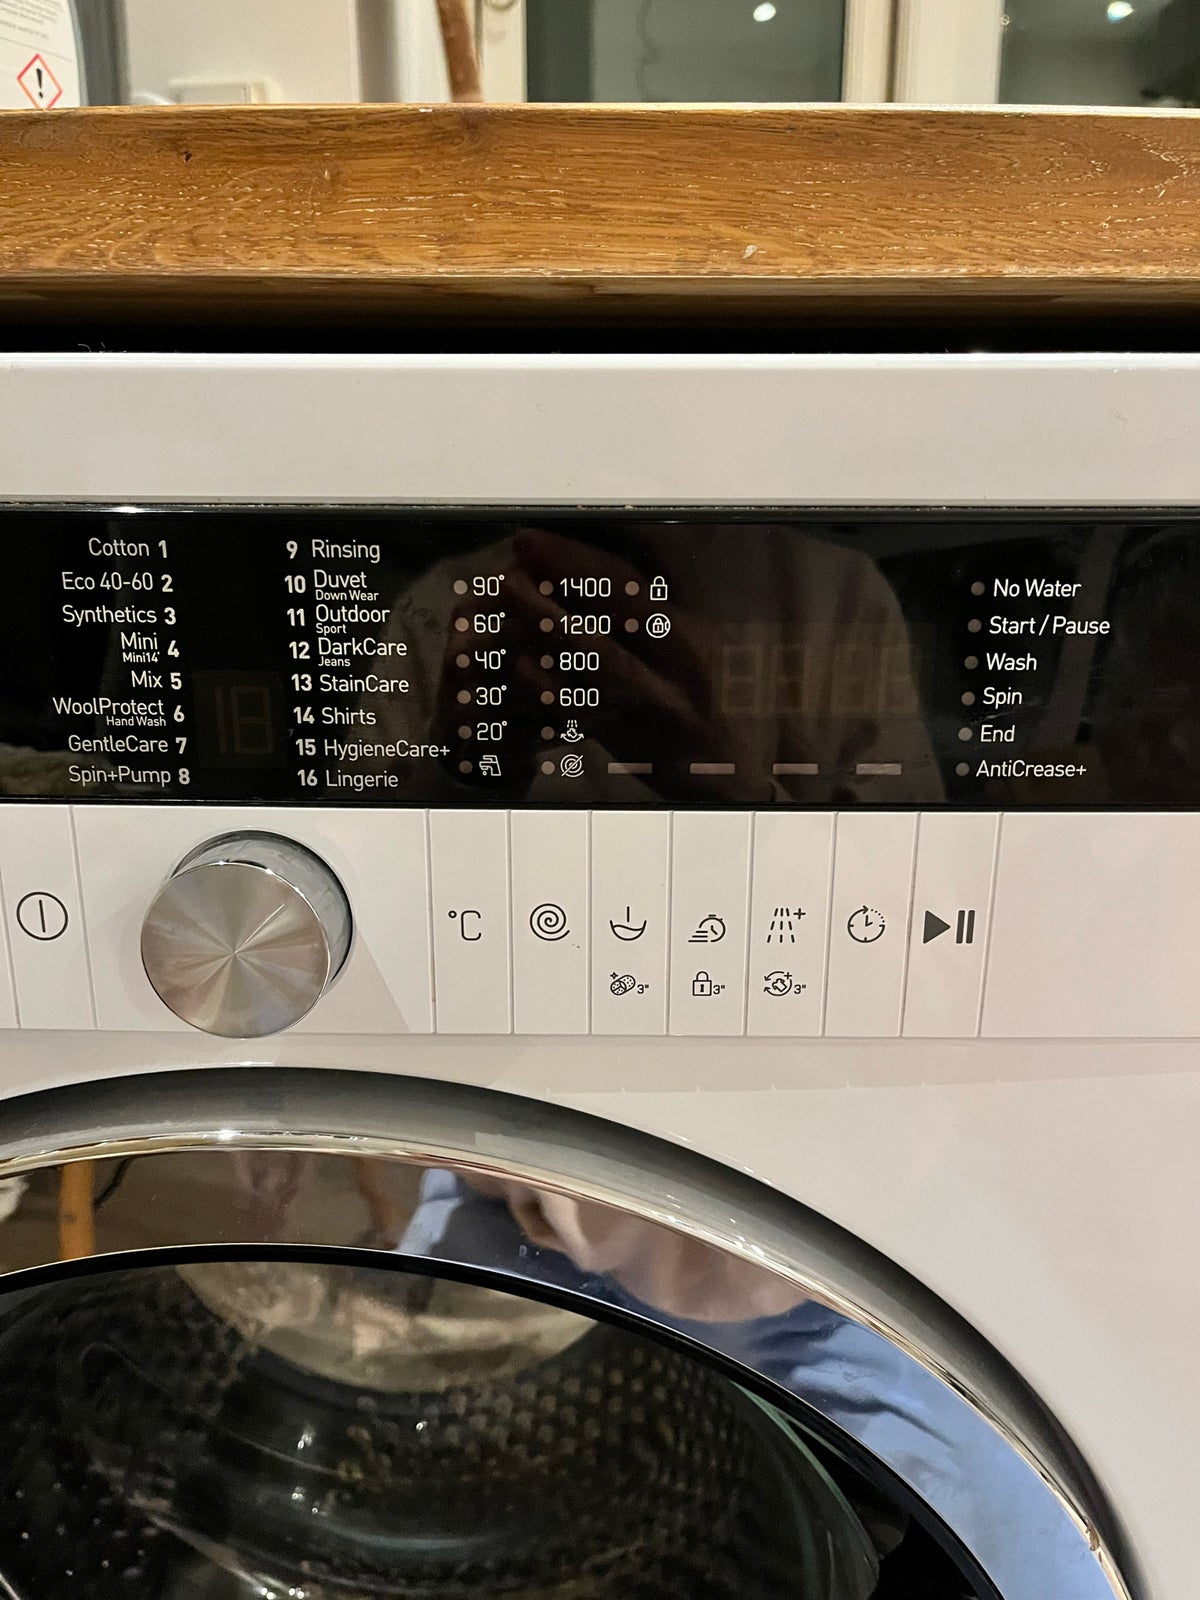 Andet mærke vaskemaskine, GWN310P430, frontbetjent